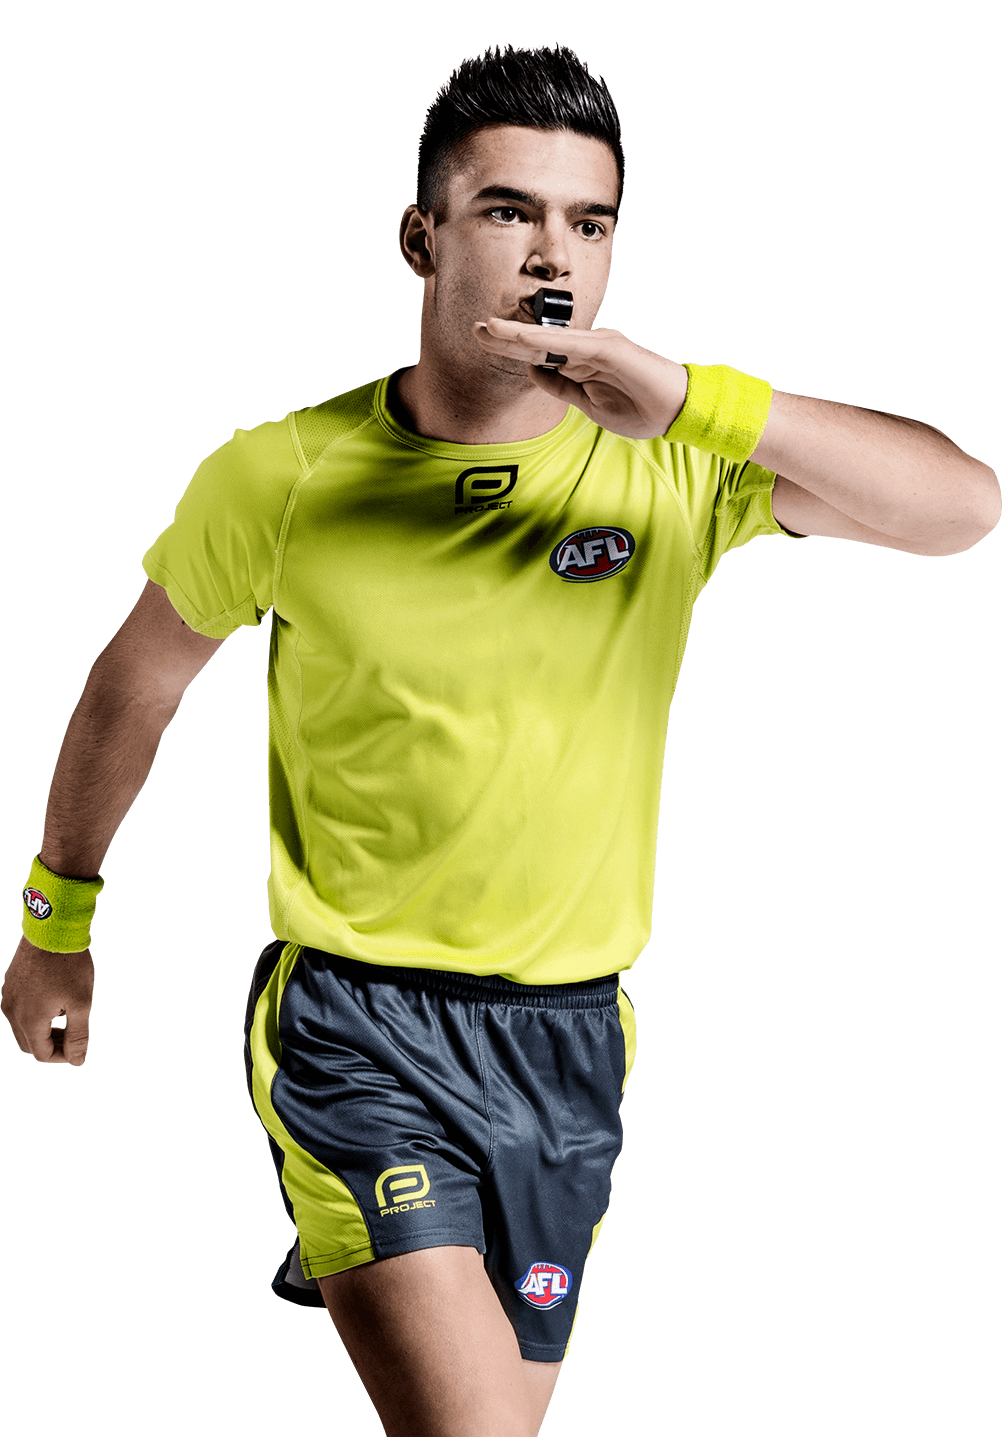 Man in an AFL green Umpire uniform